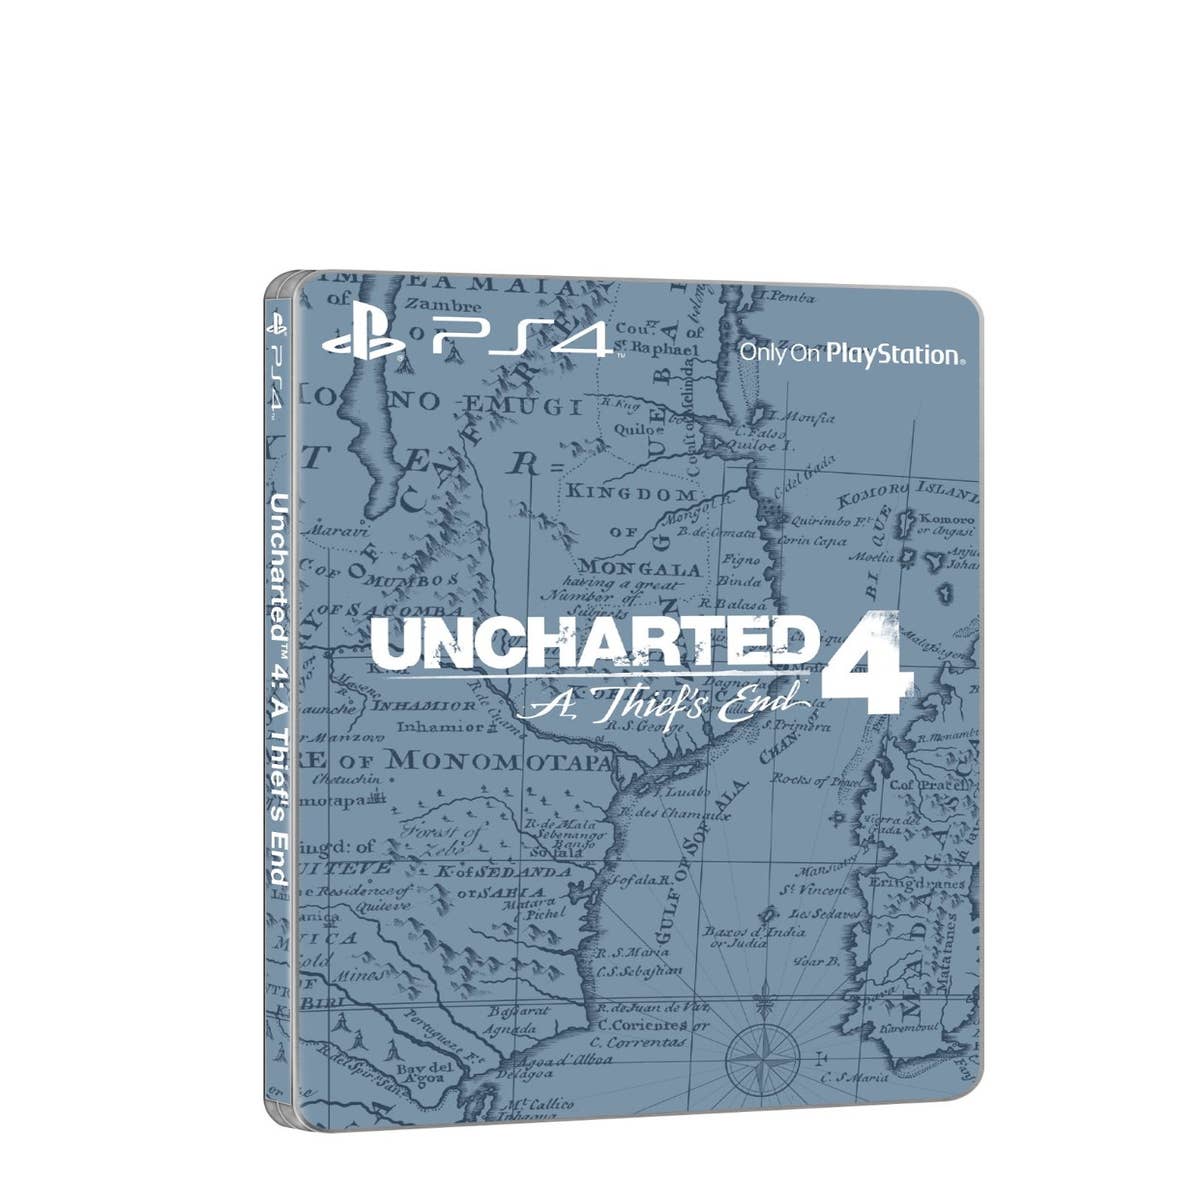 Sony revela novas imagens do filme de Uncharted